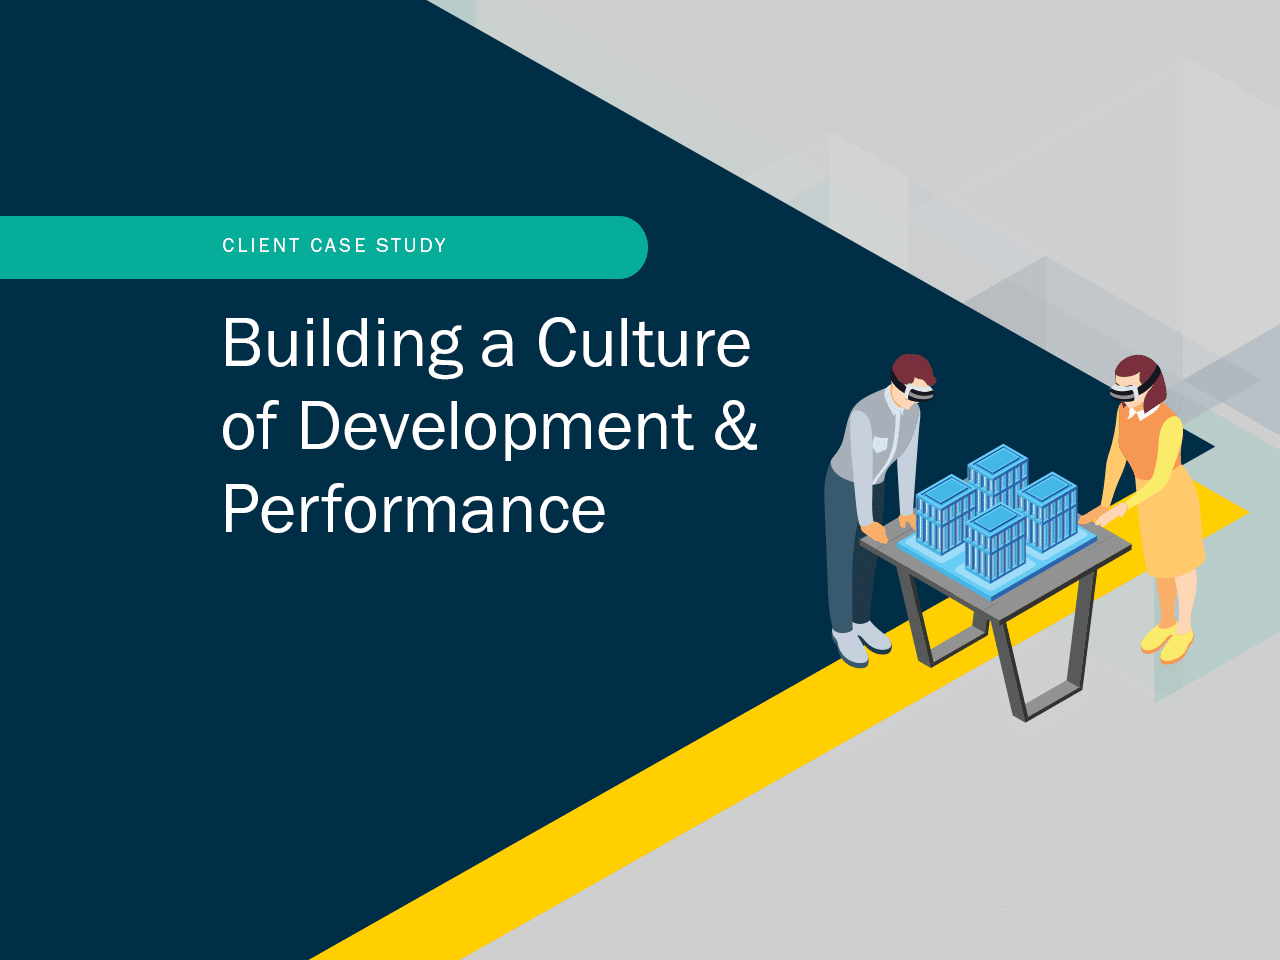 Client Case Study: Building a Culture of Development & Performance